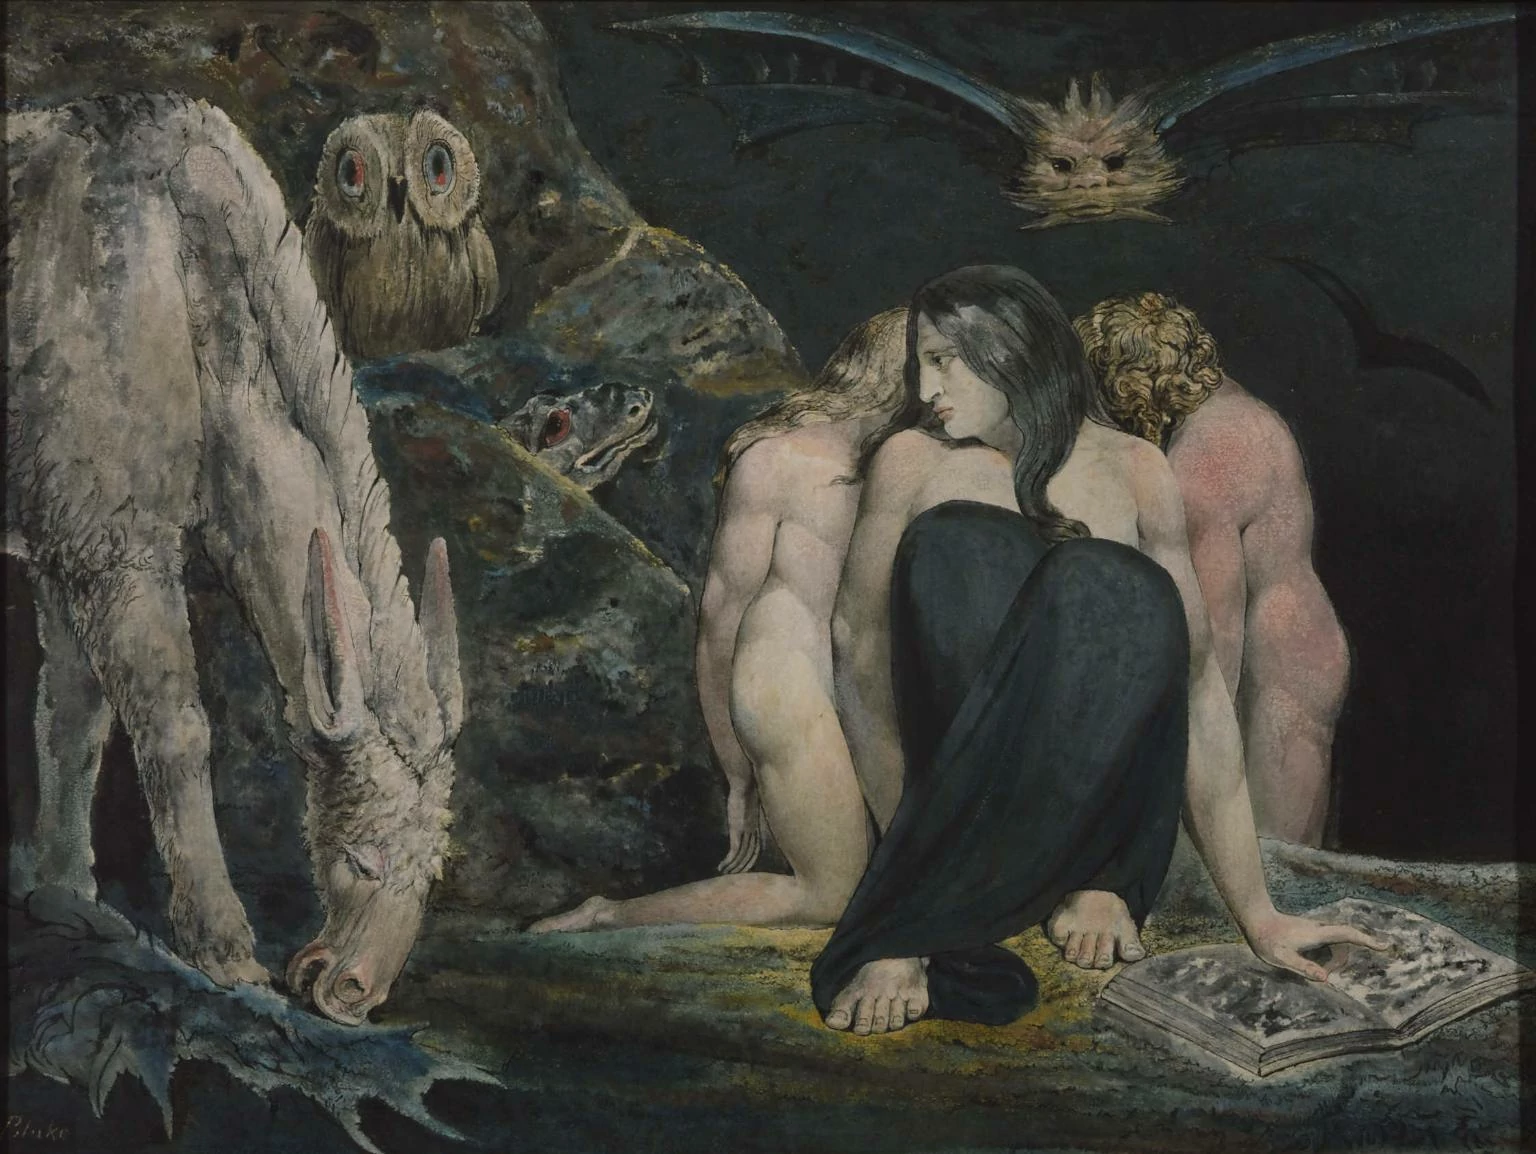 The Night of Enitharmon’s Joy, William Blake